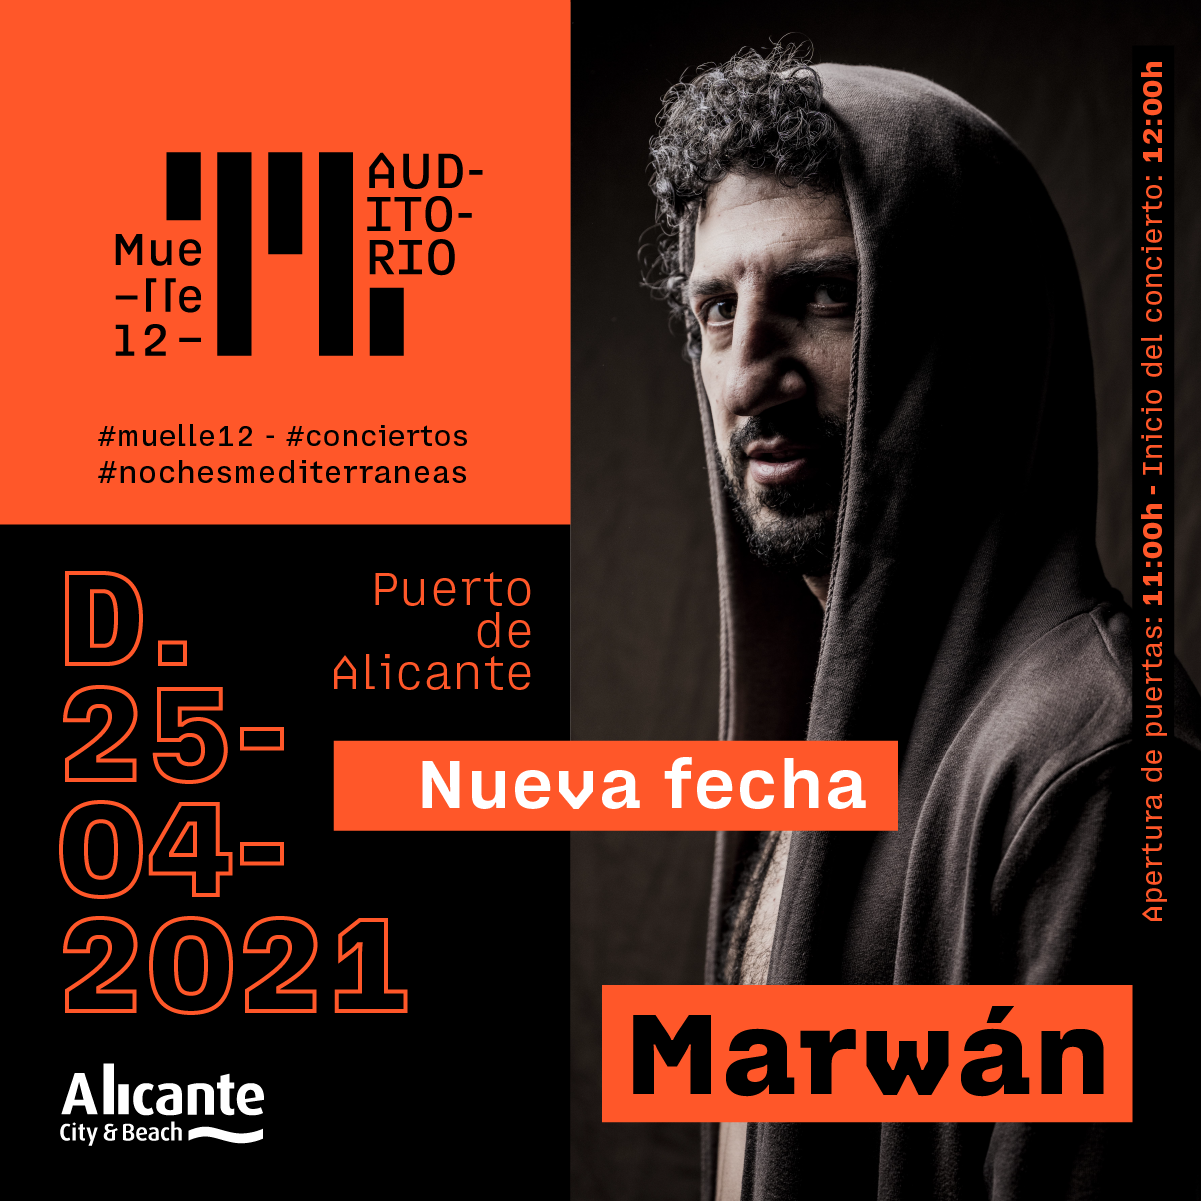 Nueva fecha para el concierto de Marwán en Muelle 12, Alicante